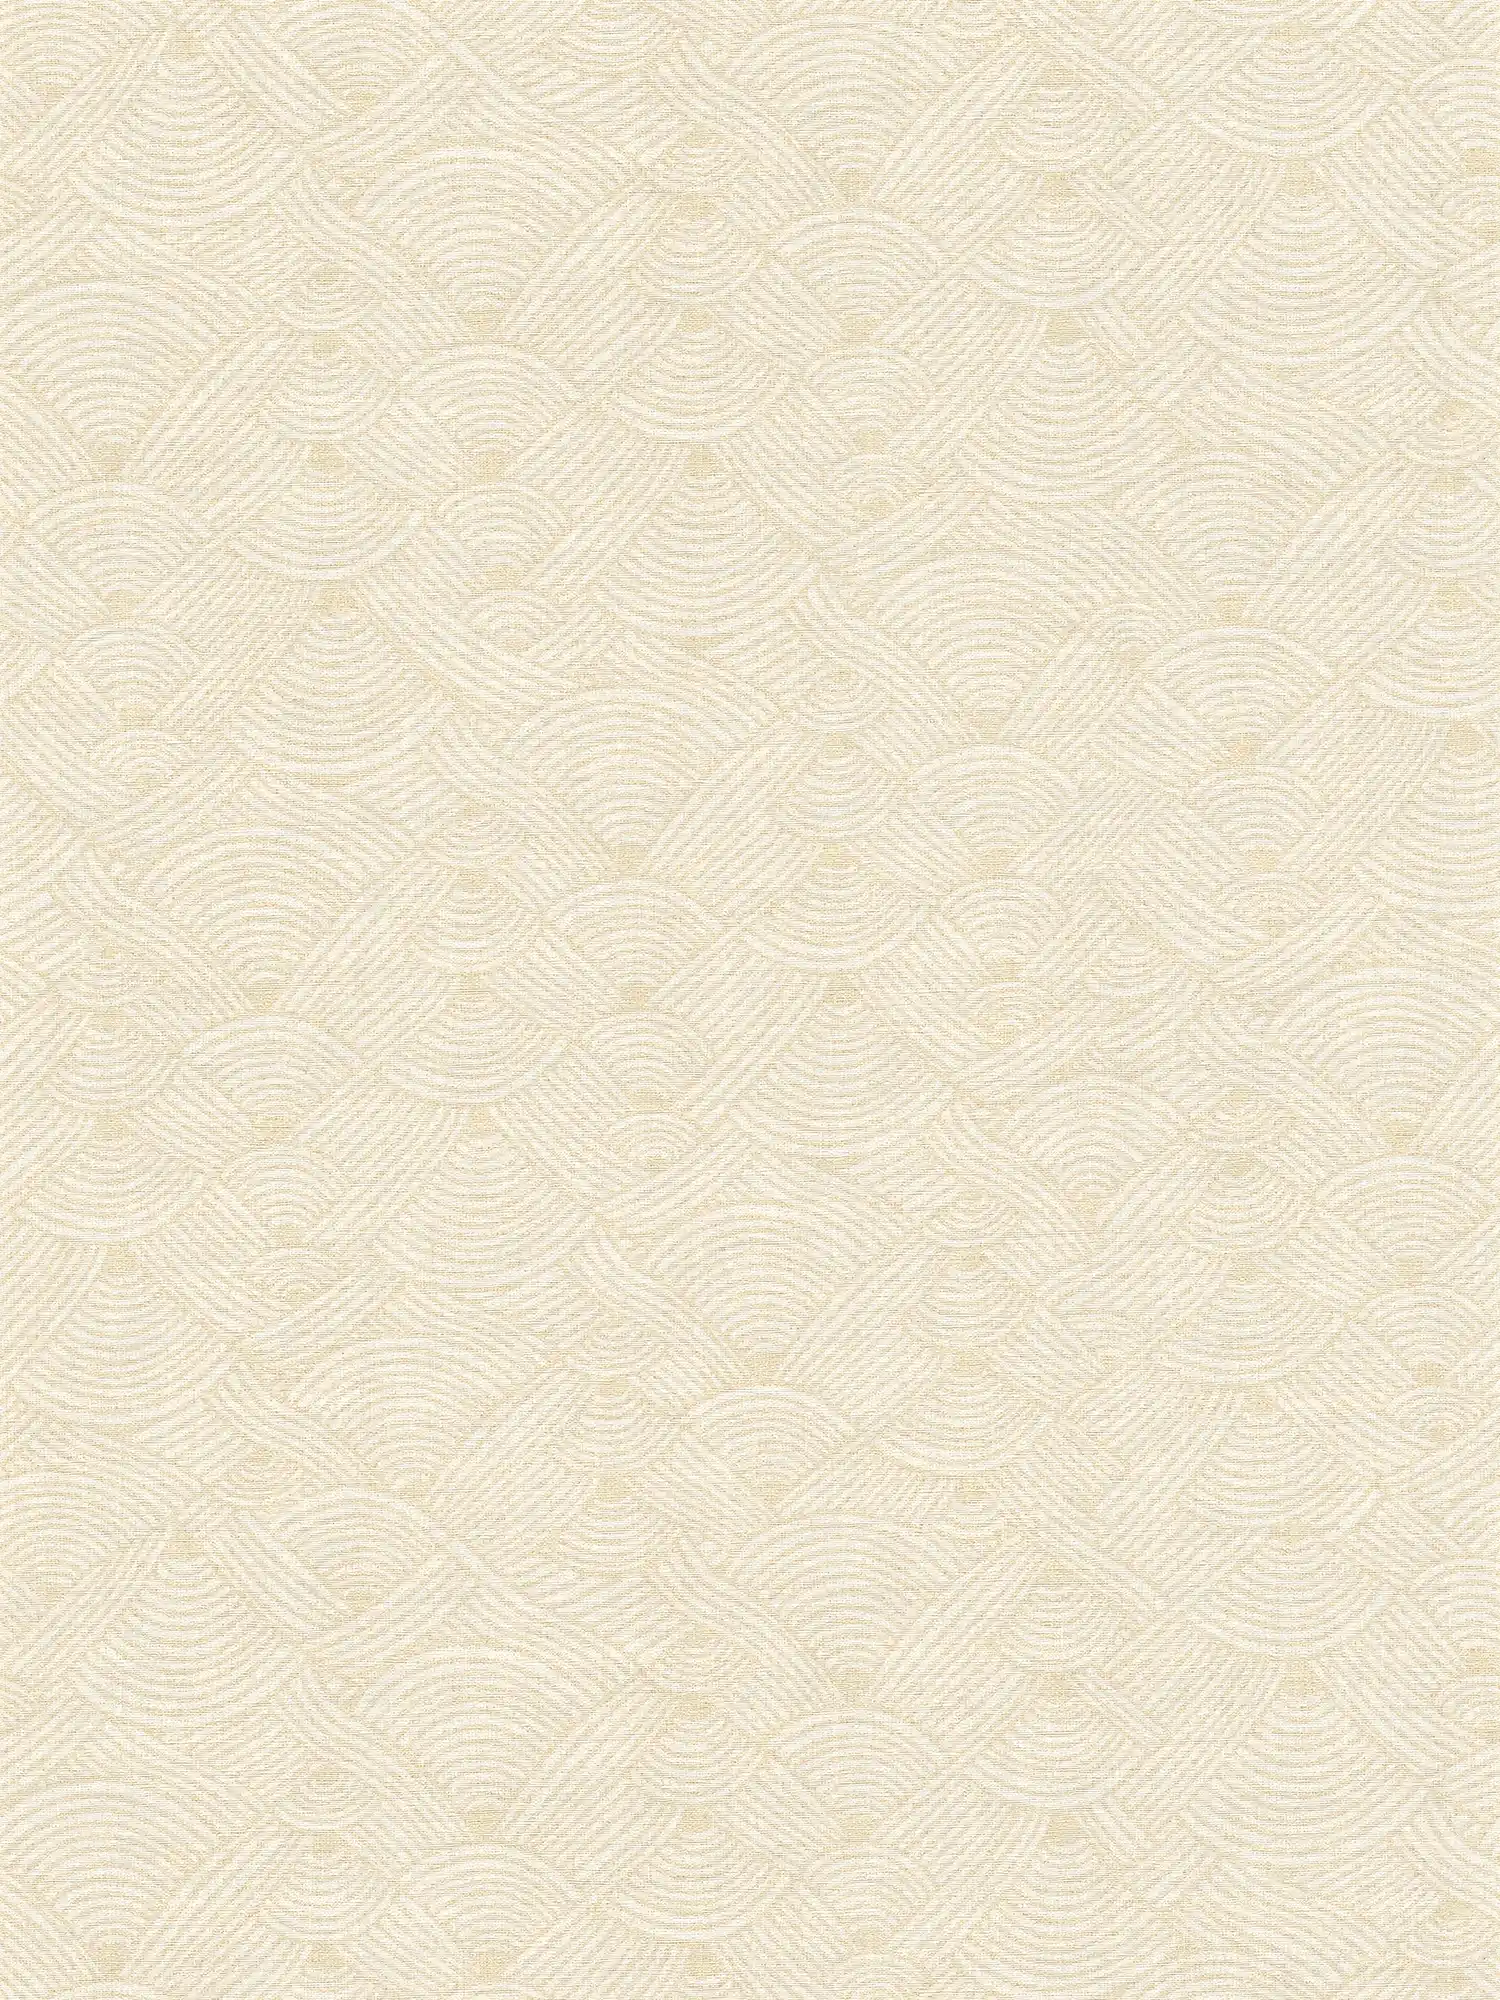 Non-woven wallpaper lichen design in ethnic style - cream, white
